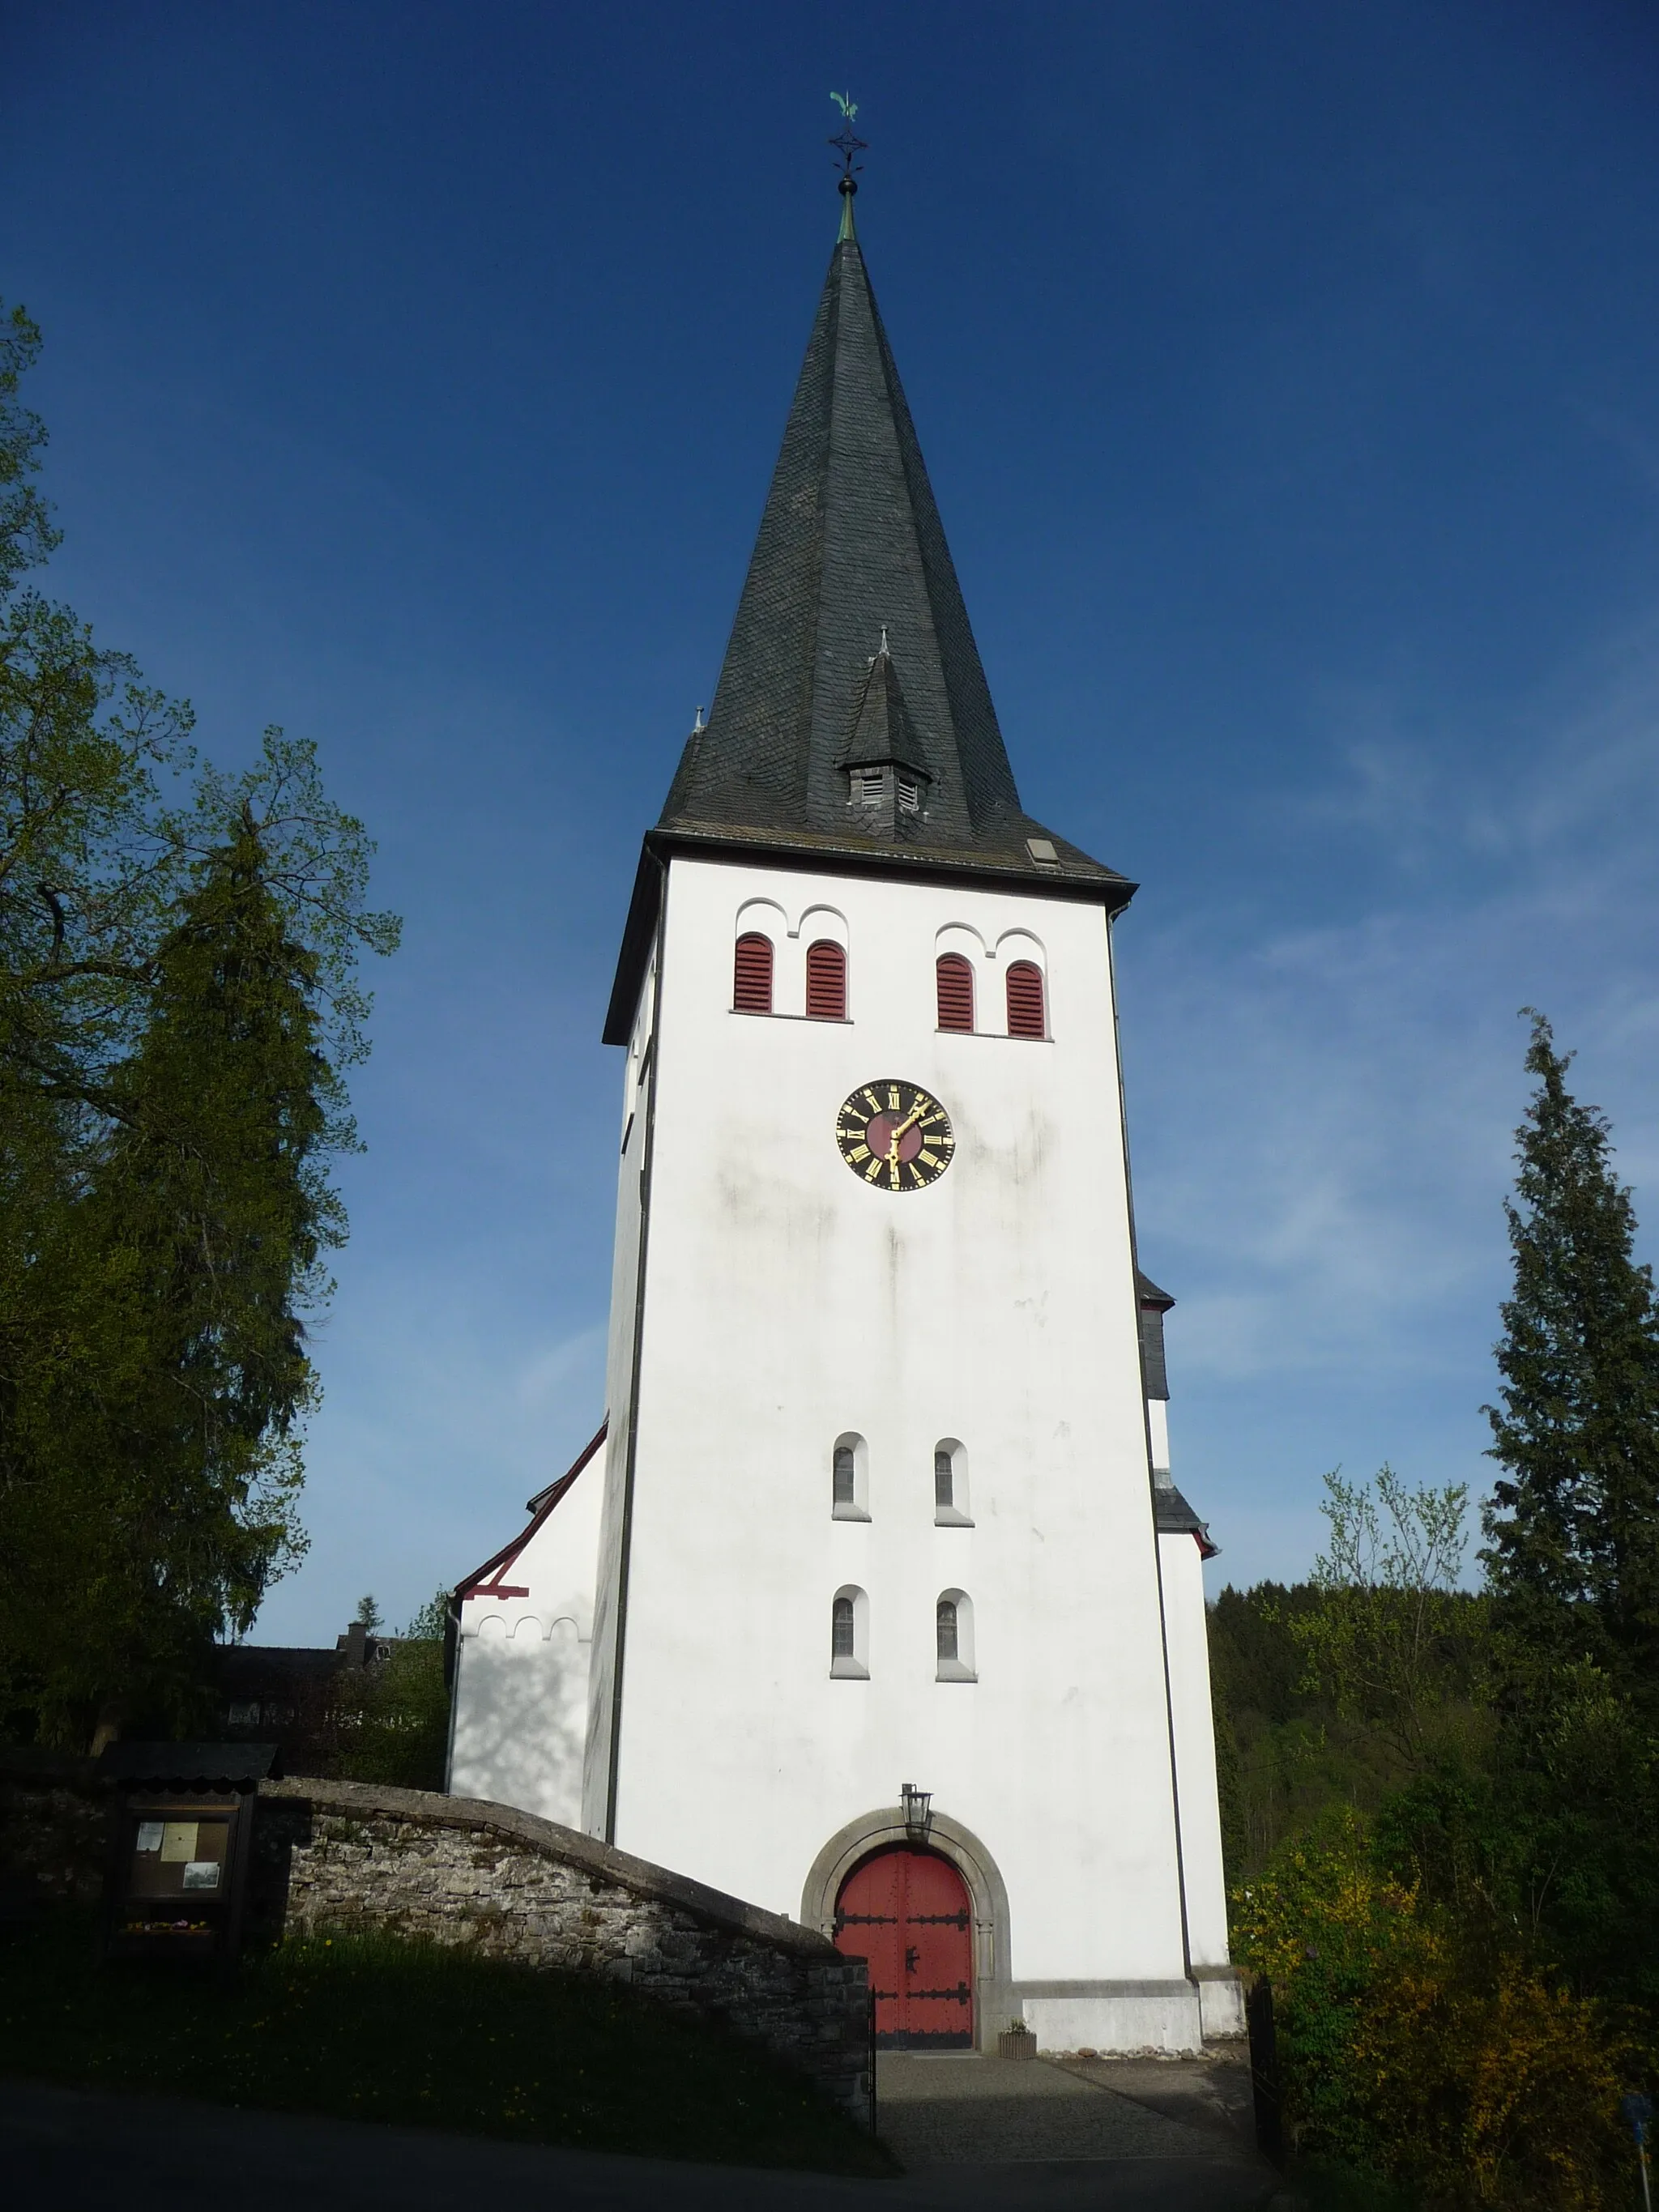 Photo showing: Die evangelisch-reformierte Kirche ist ein denkmalgeschütztes Kirchengebäude in Oberholzklau, einem Stadtteil von Freudenberg im Kreis Siegen-Wittgenstein in Nordrhein-Westfalen.